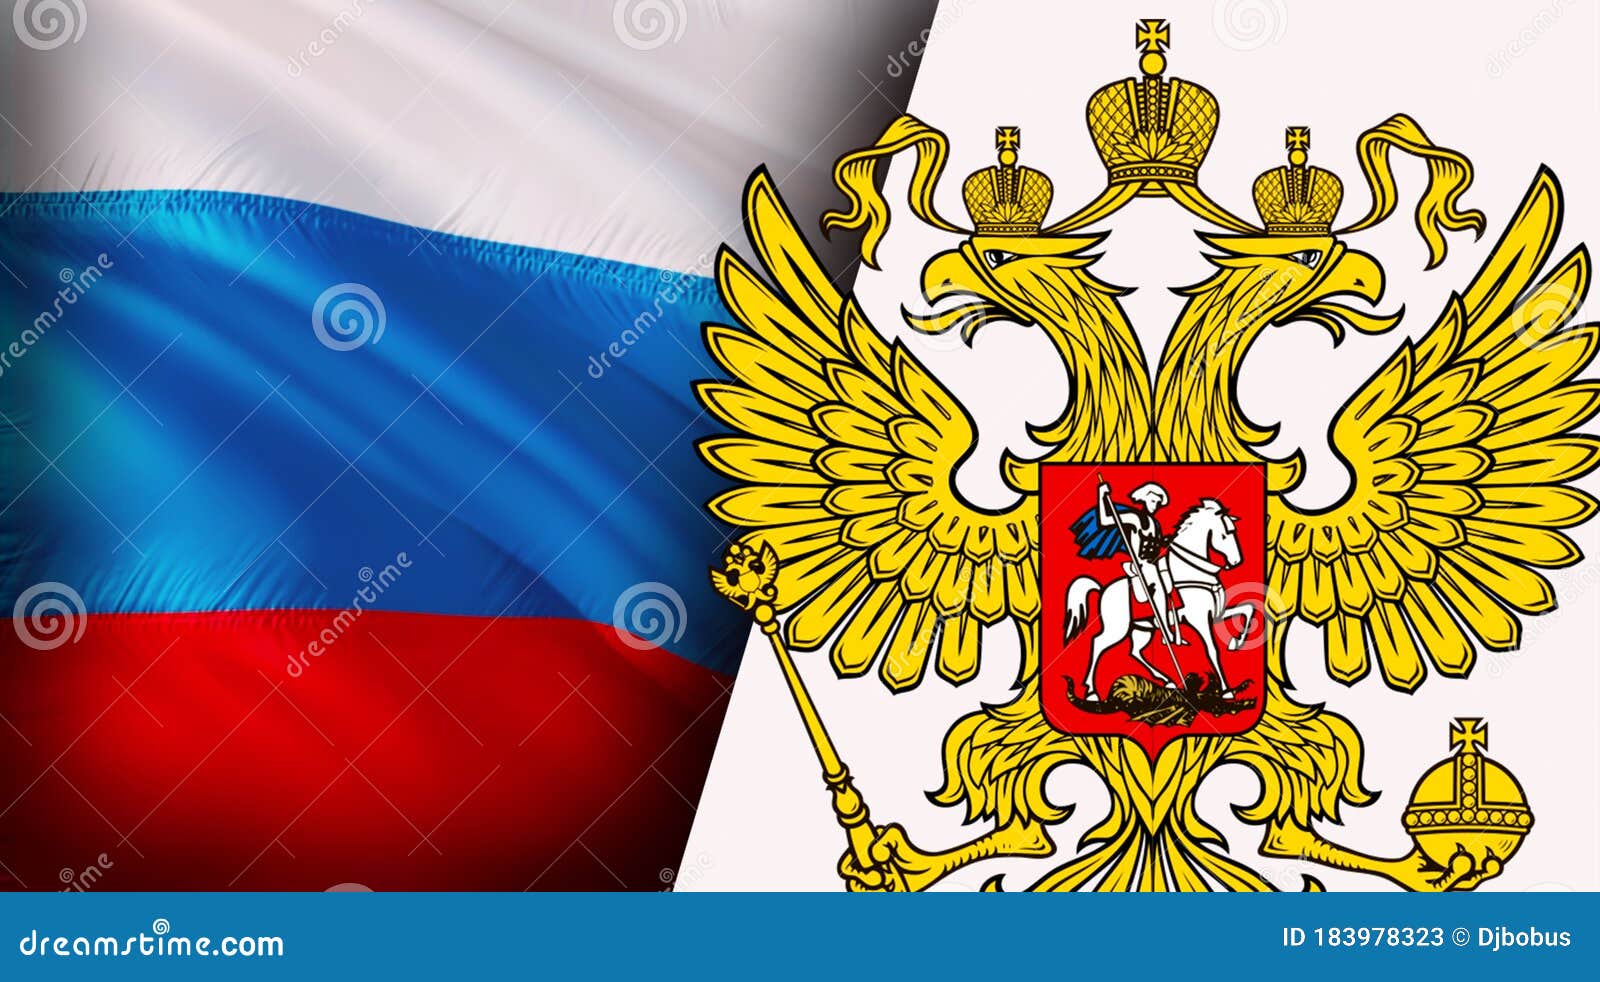 bandeira da rússia. bandeira nacional realista da federação russa